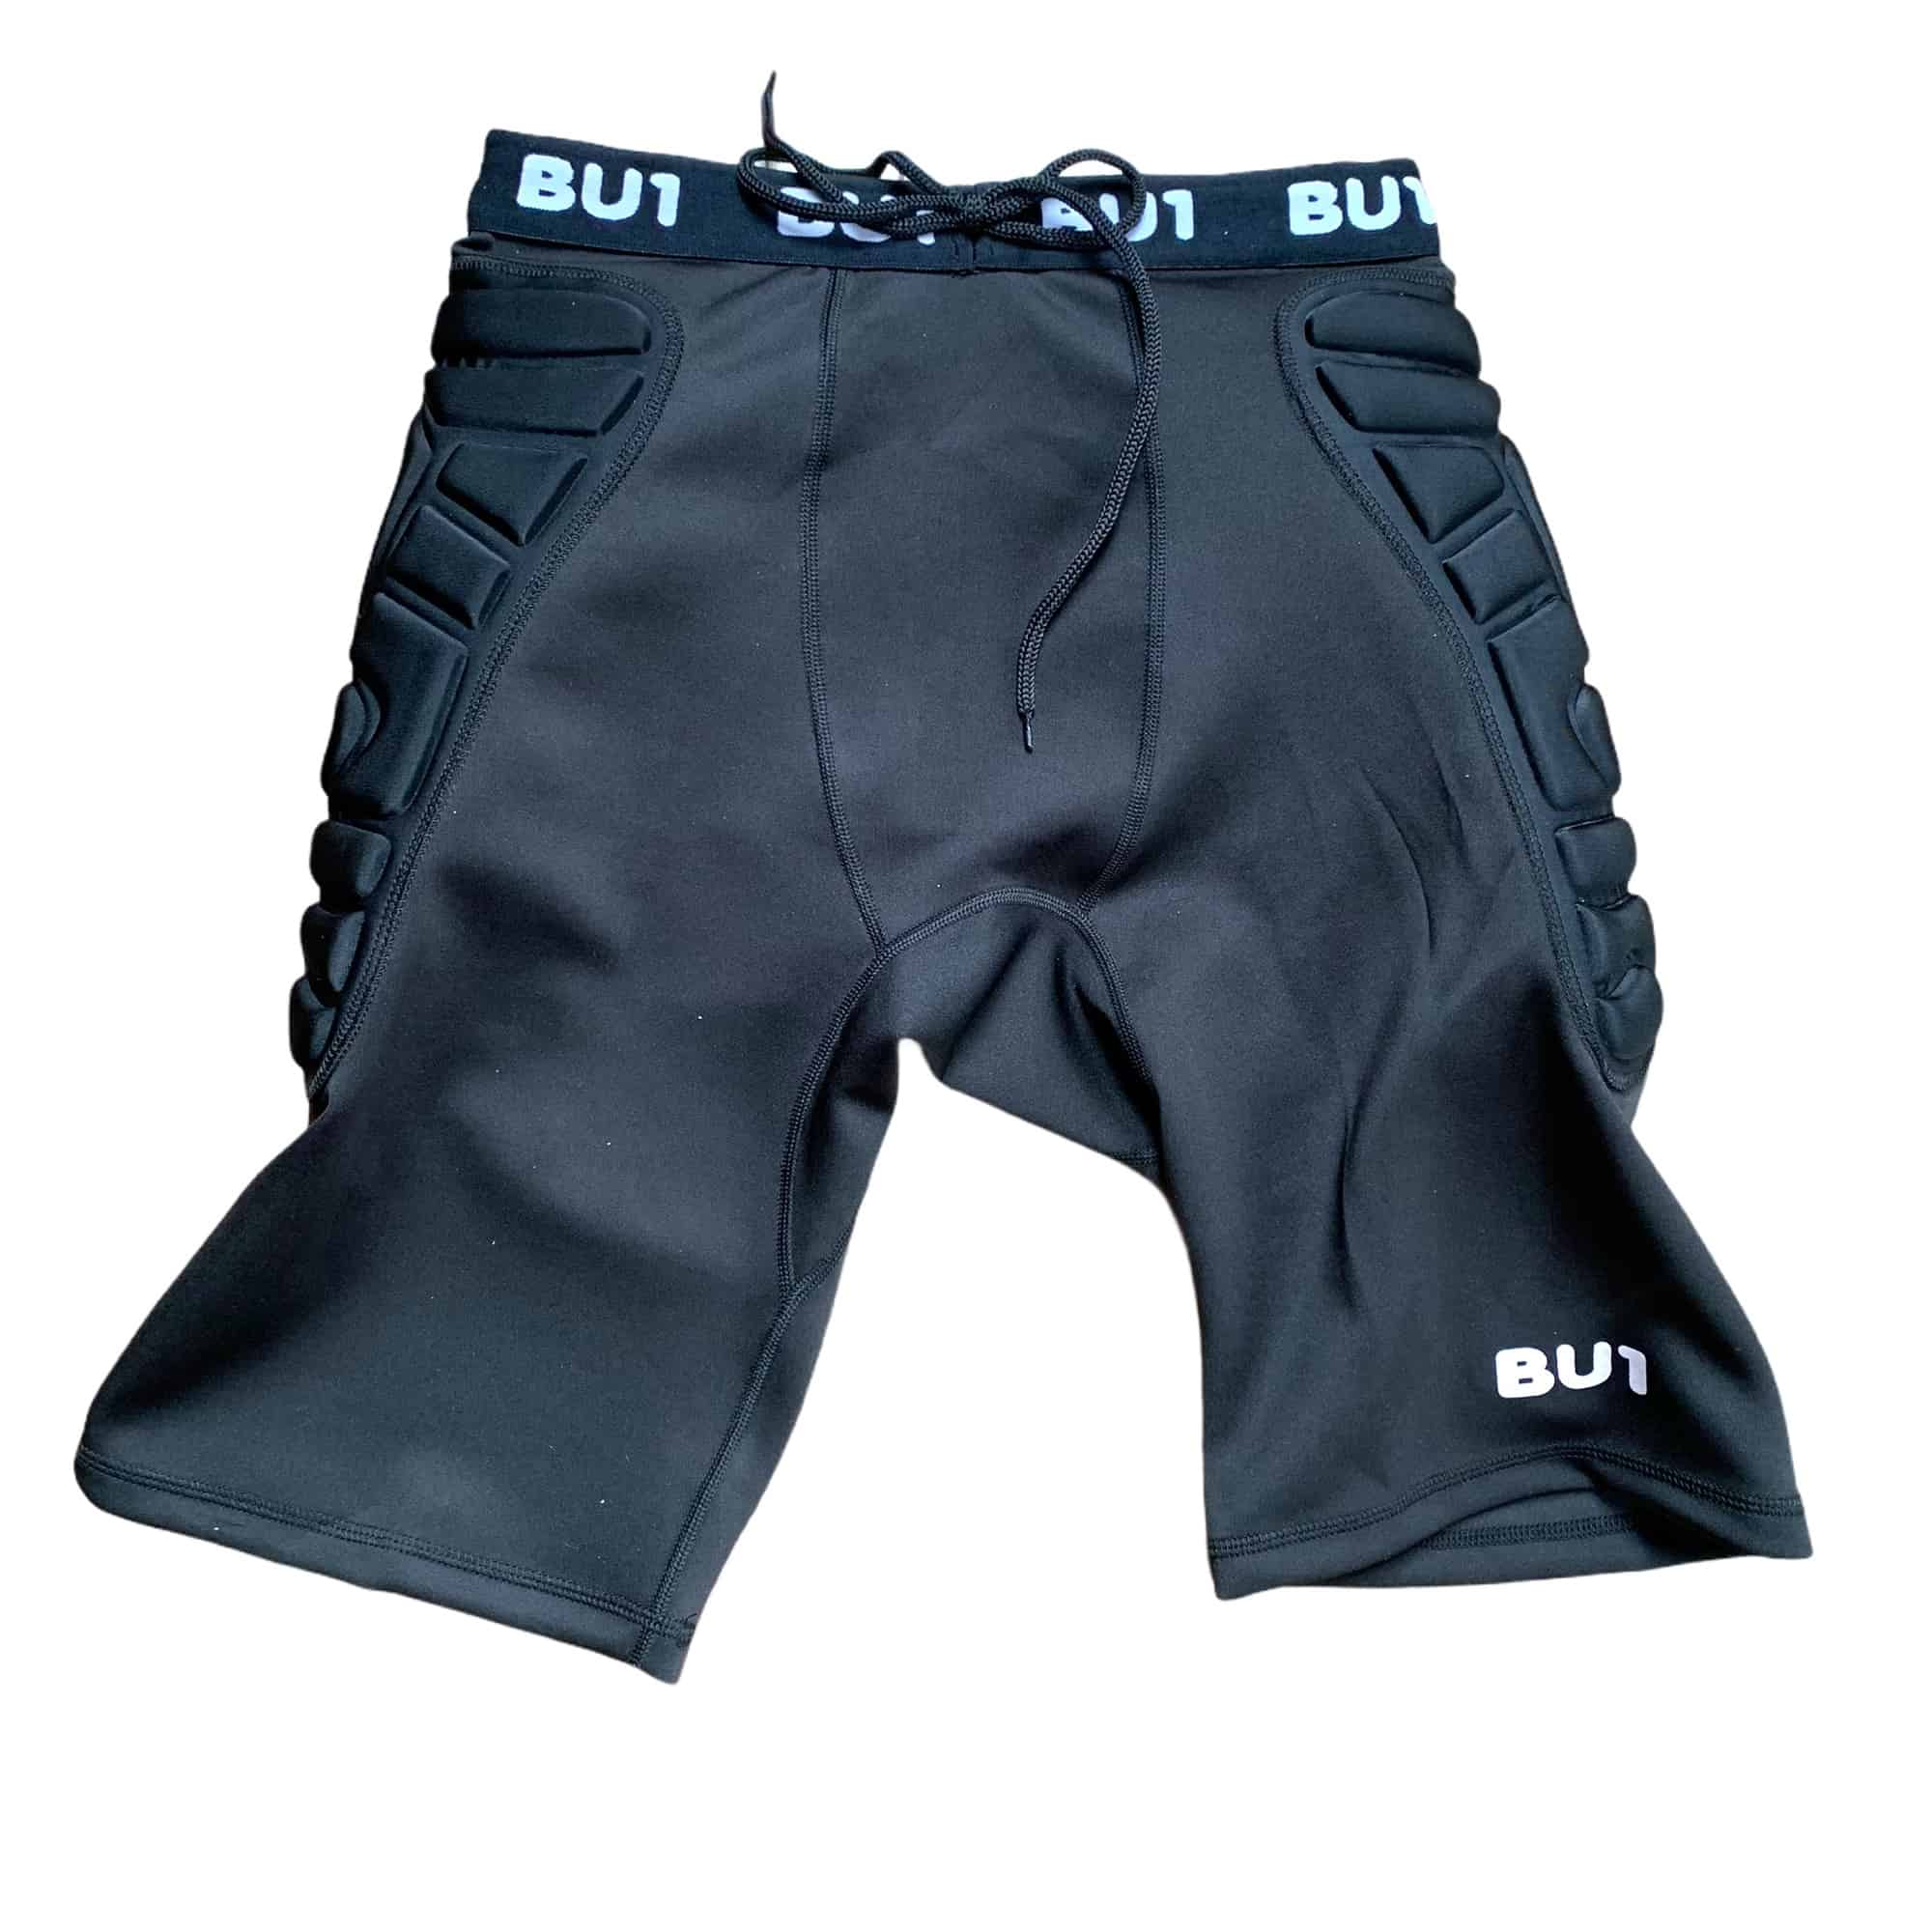 BU1 reinforced leggings short black